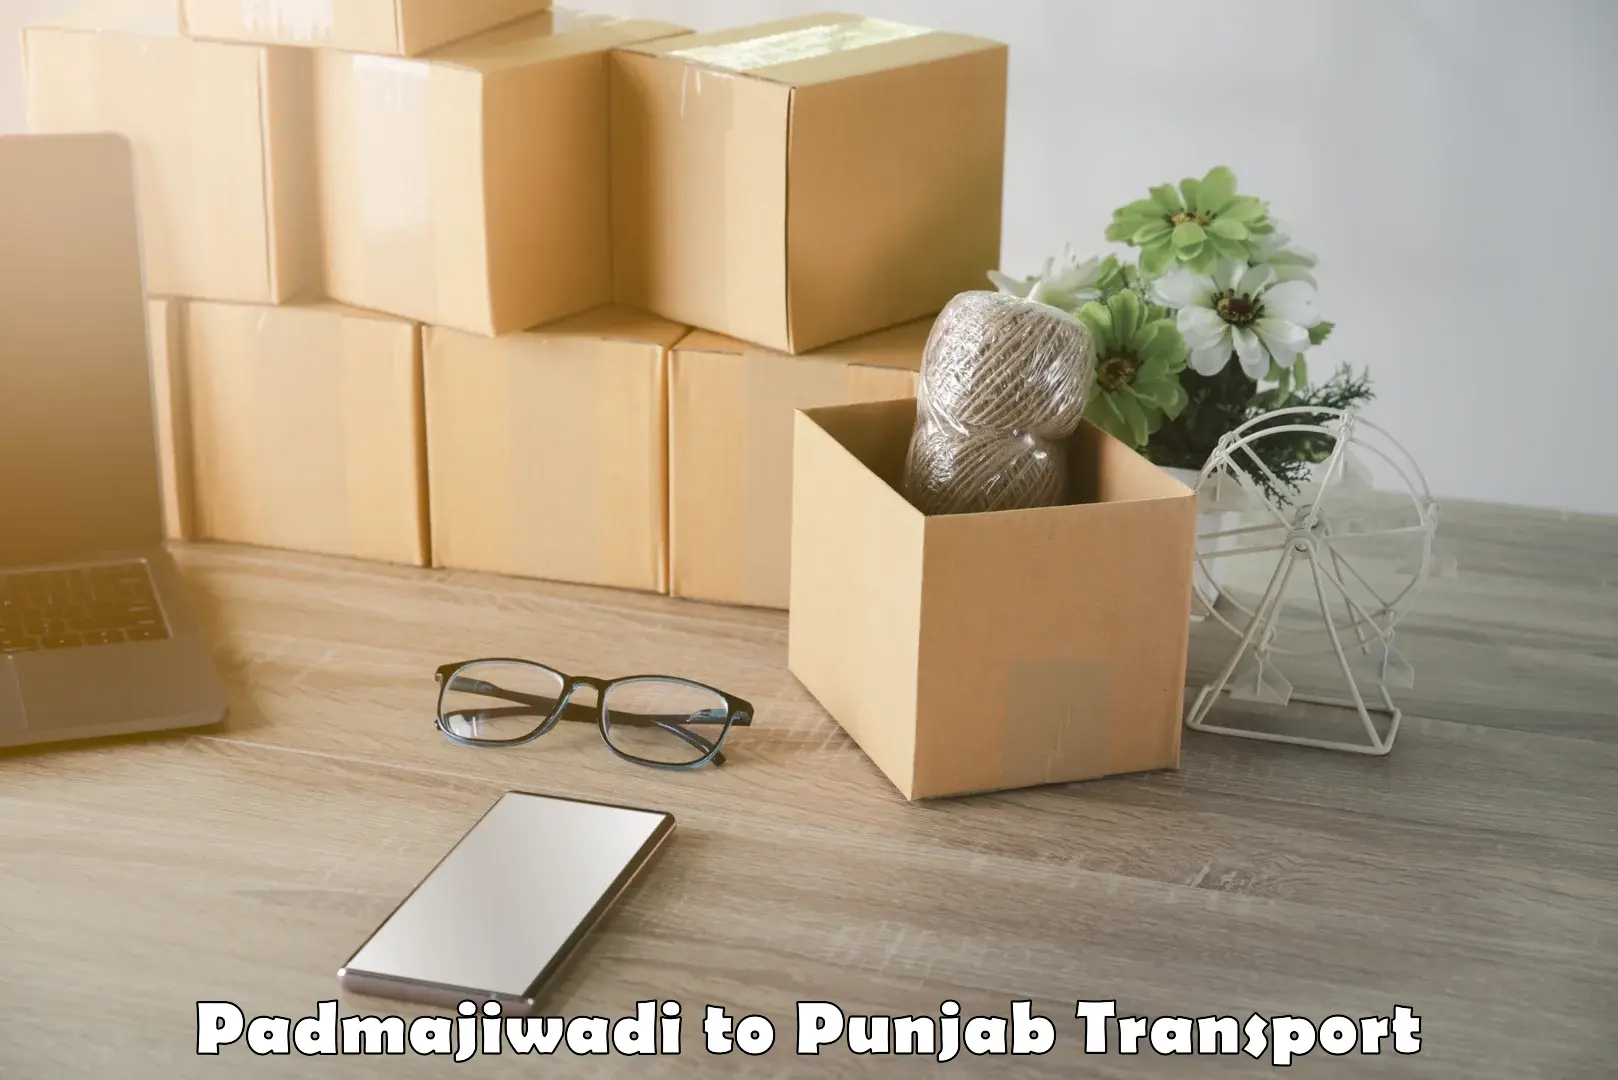 Cargo transportation services Padmajiwadi to Punjab